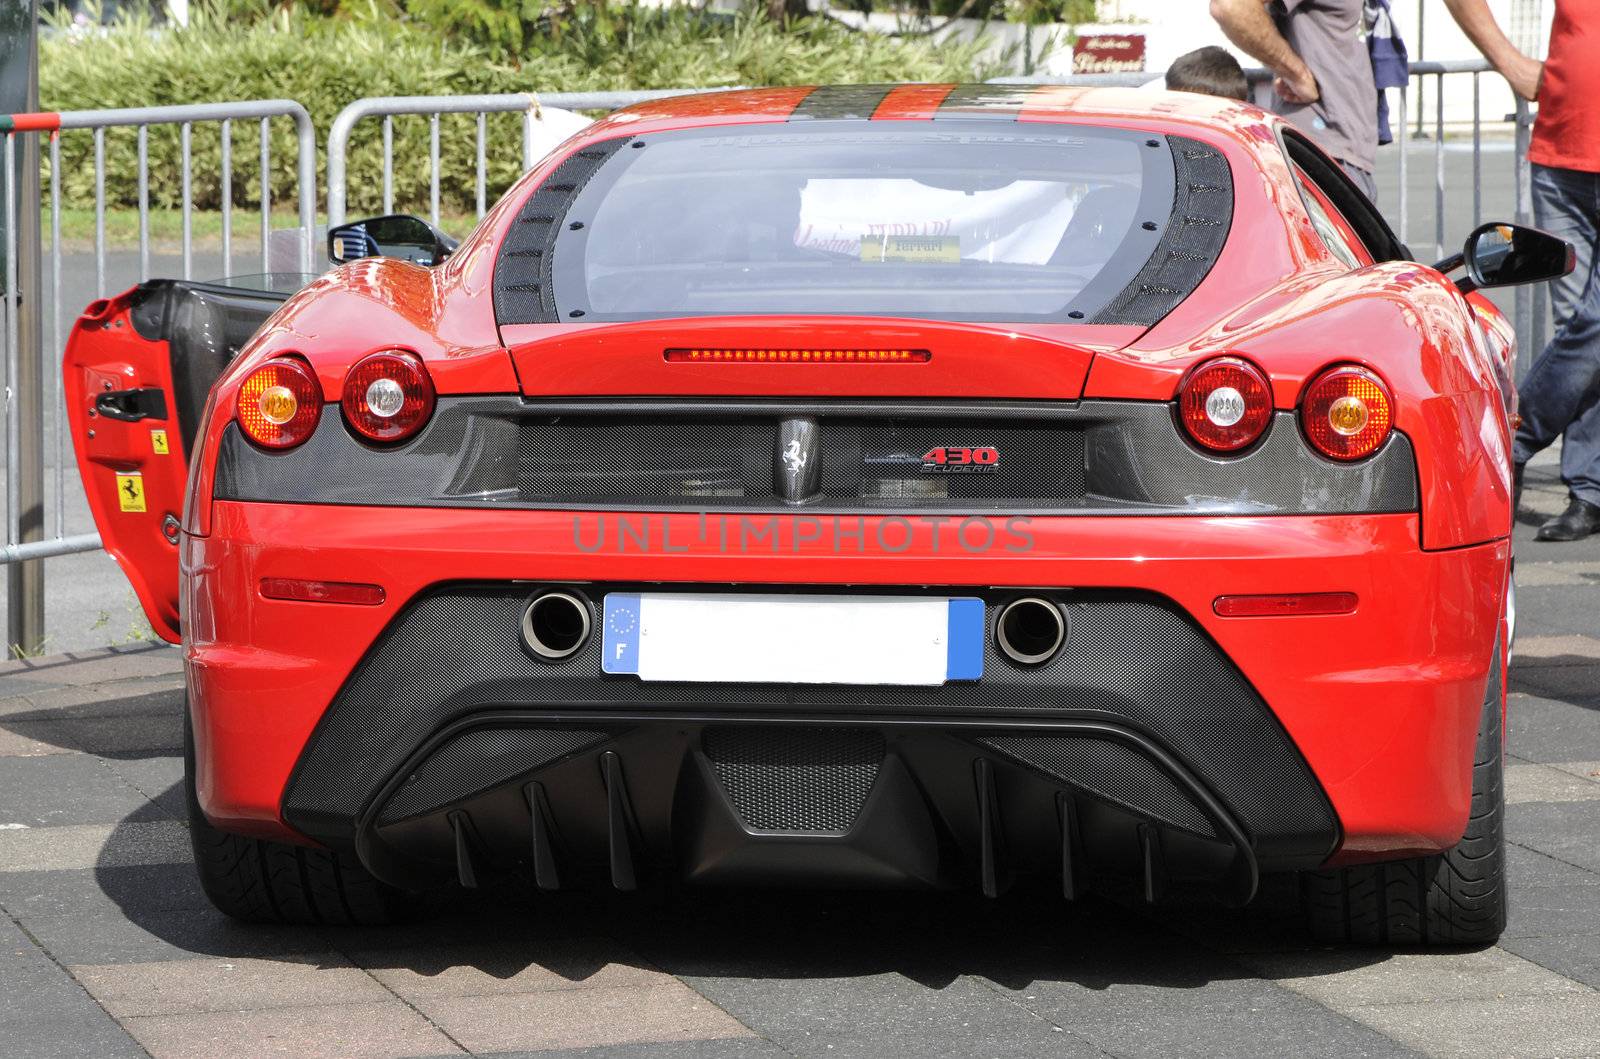 Back view of a F430 Scuderia Ferrari by shkyo30